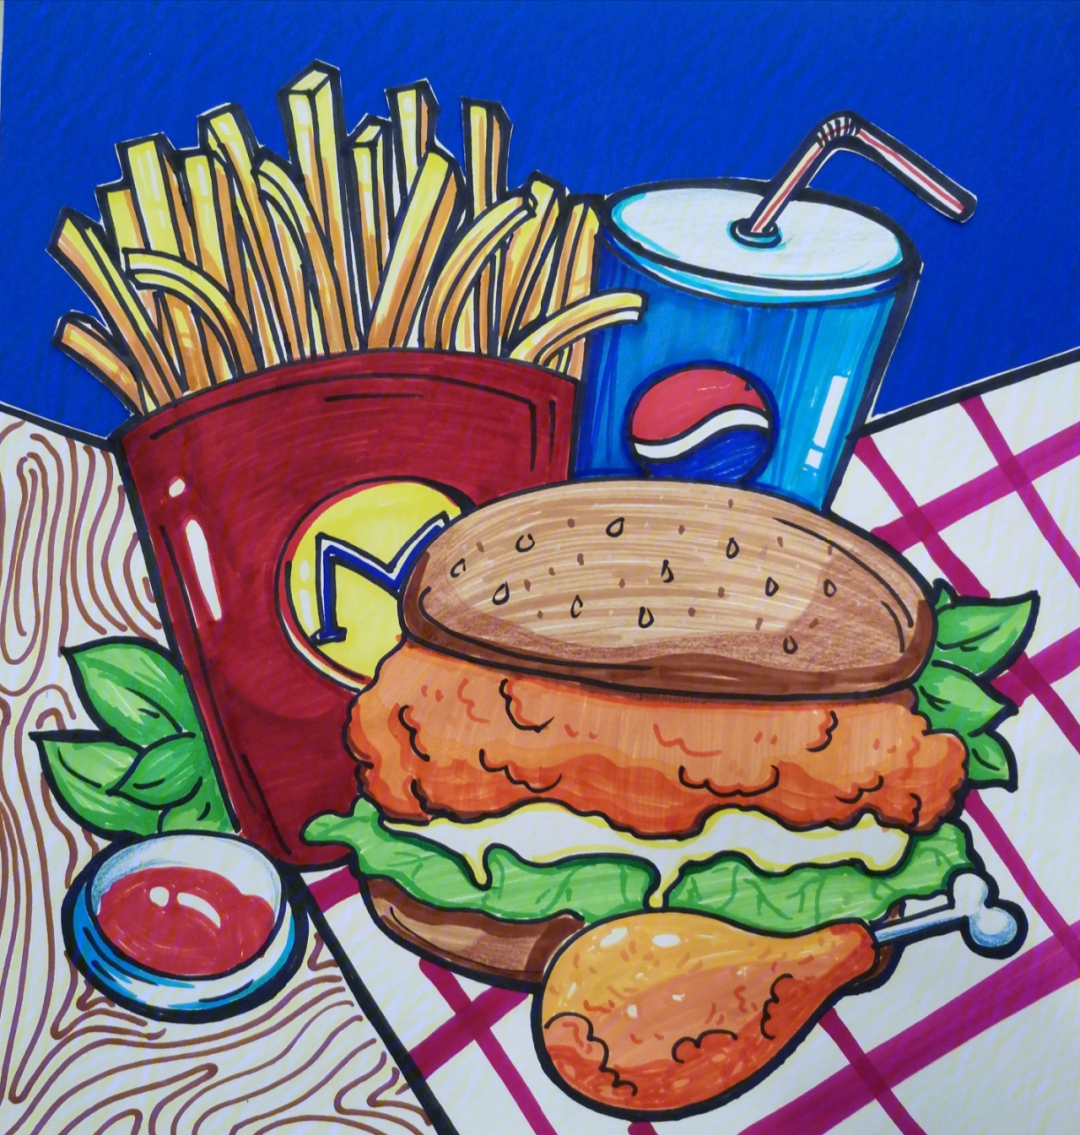 画画汉堡套餐图片